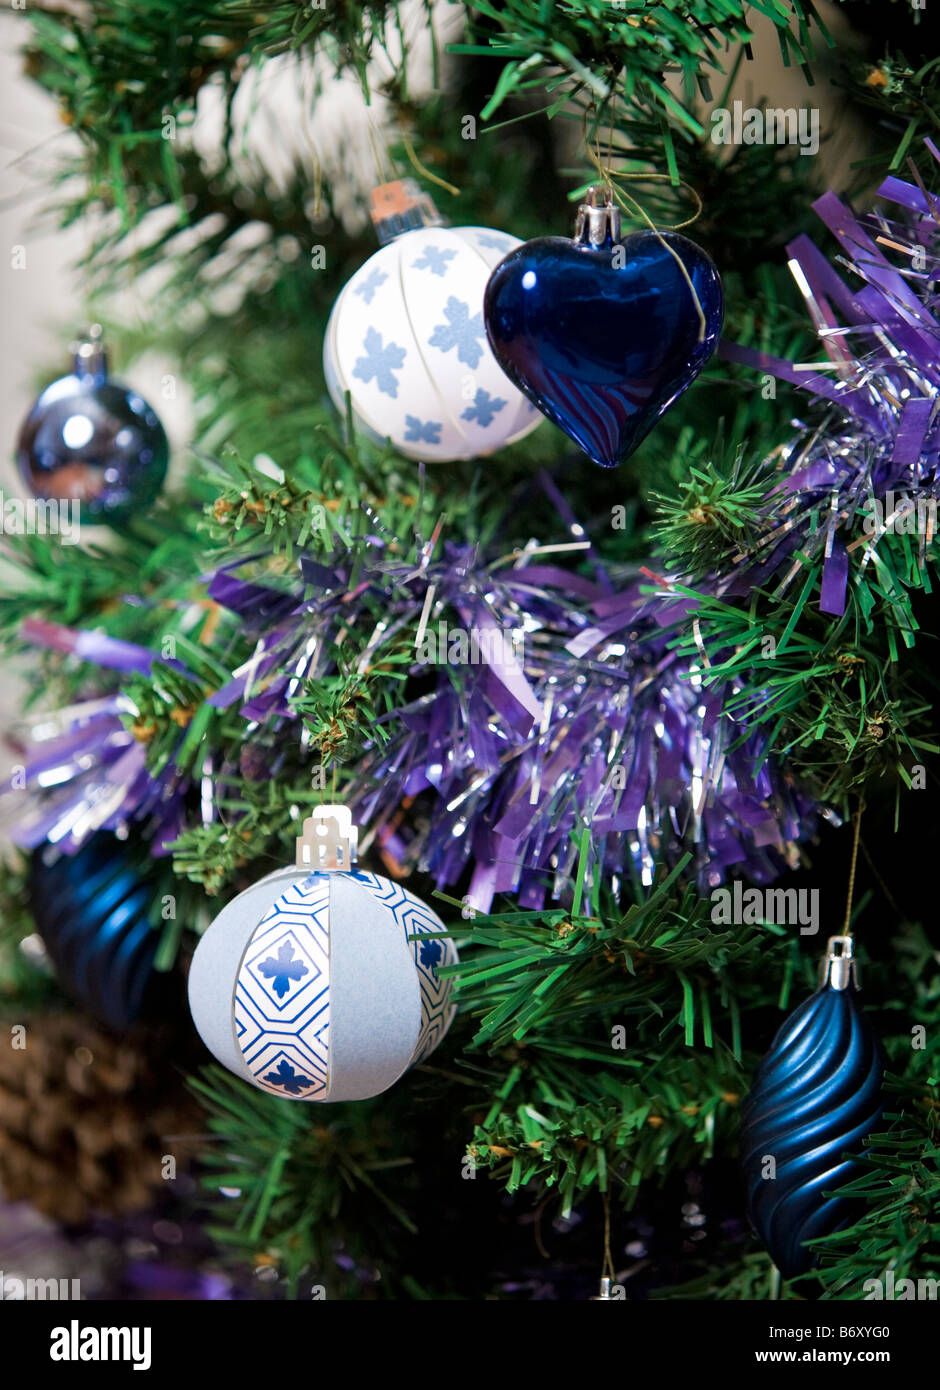 Le papier et l'arbre de Noël métallique bauble décorations de Noël avec les guirlandes Banque D'Images